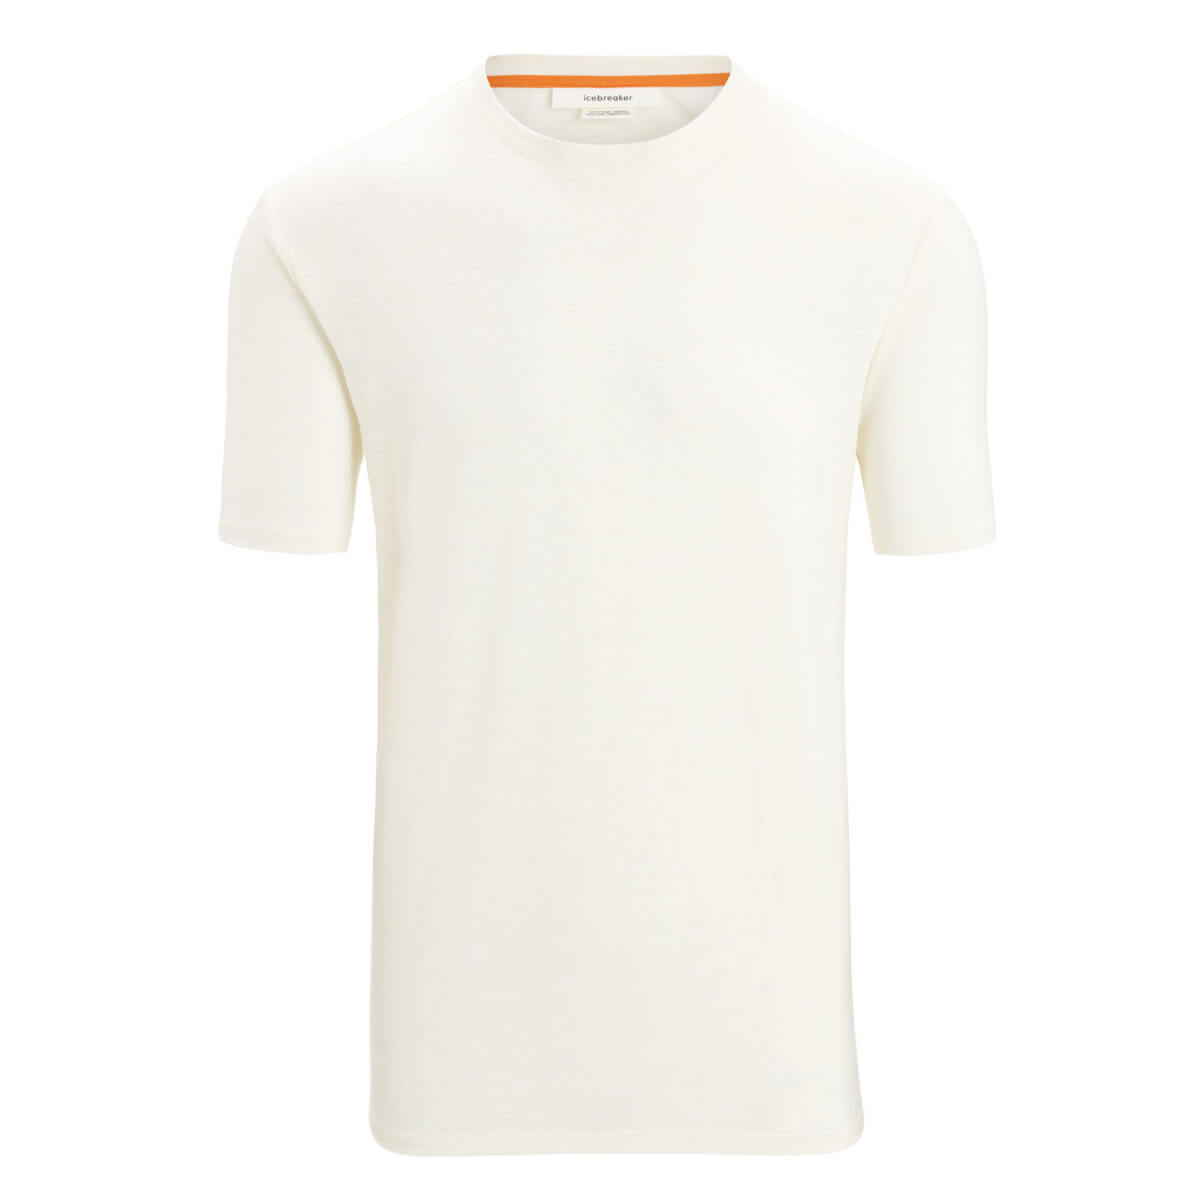 Icebreaker Men's Merino Linen Short Sleeve T-Shirt